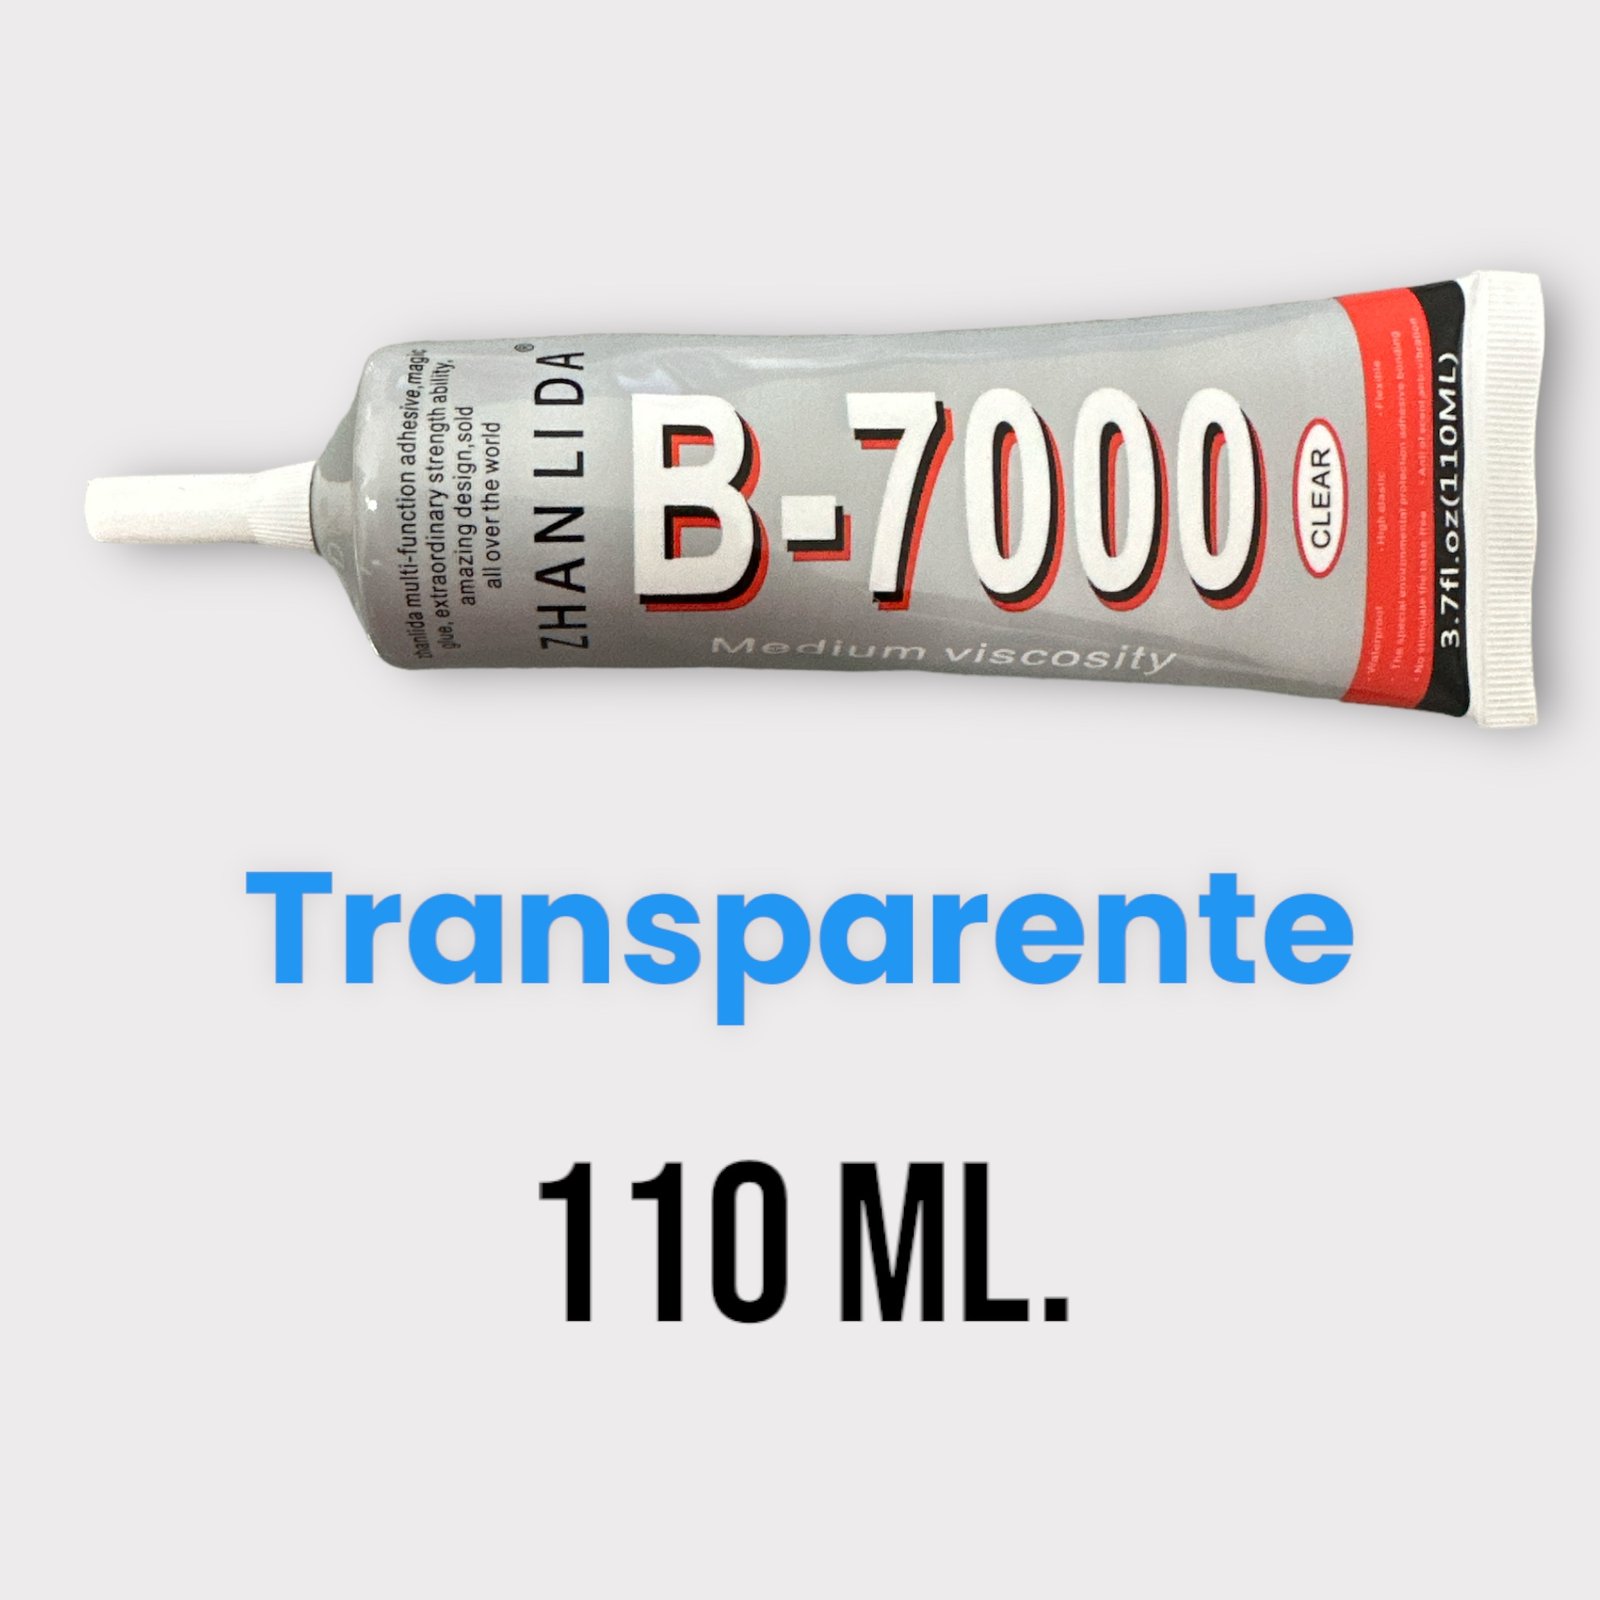 Pegamento B7000 ZHANLIDA Transparente, 110ml